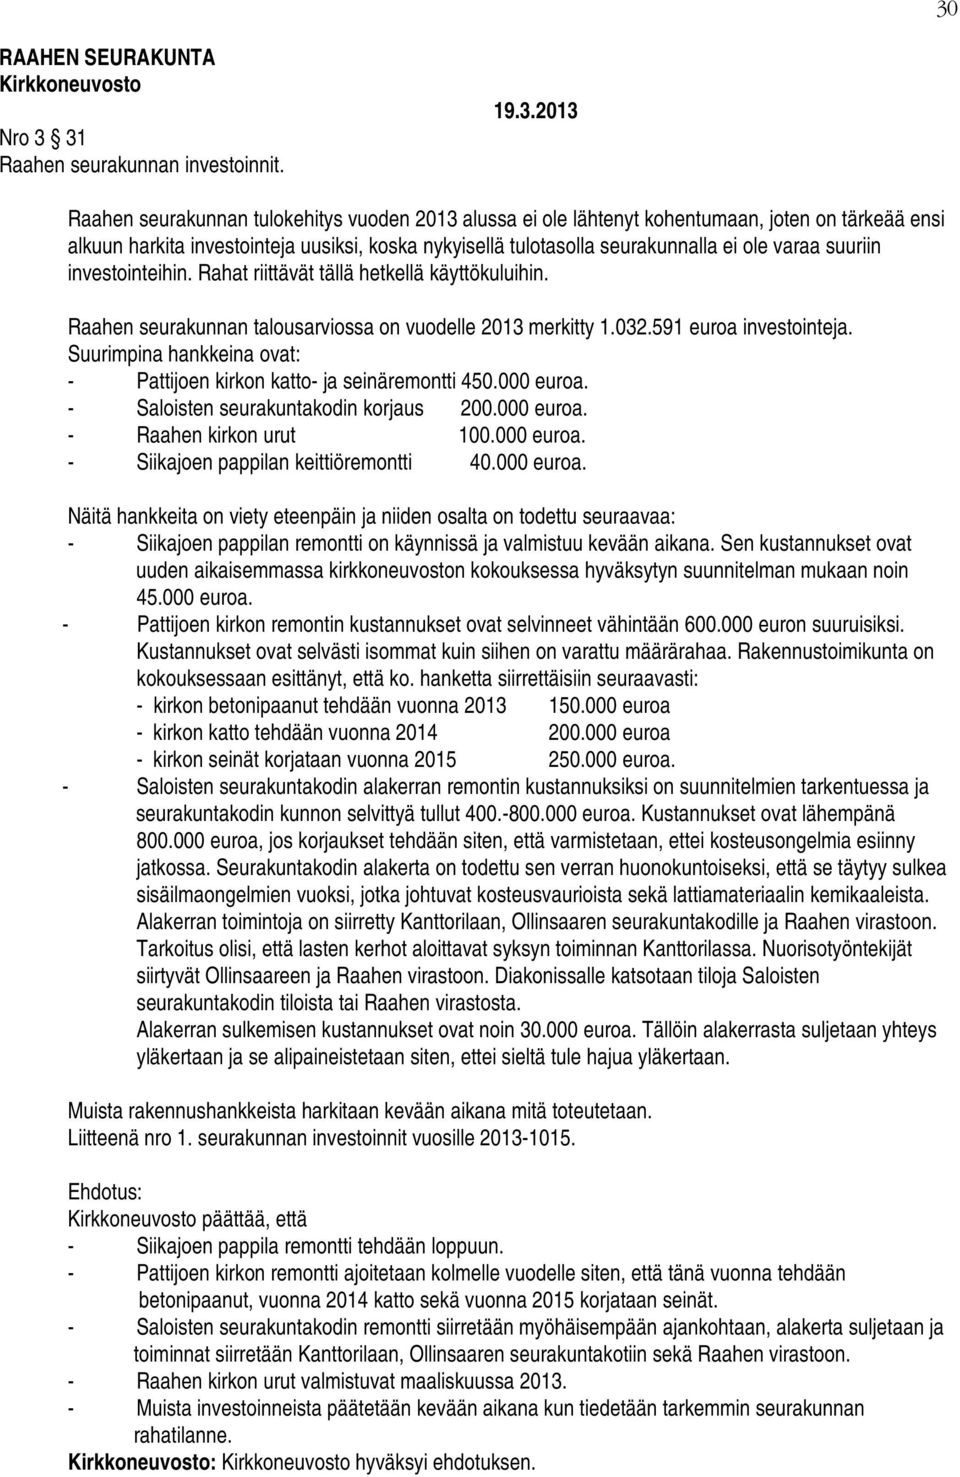 suuriin investointeihin. Rahat riittävät tällä hetkellä käyttökuluihin. Raahen seurakunnan talousarviossa on vuodelle 2013 merkitty 1.032.591 euroa investointeja.